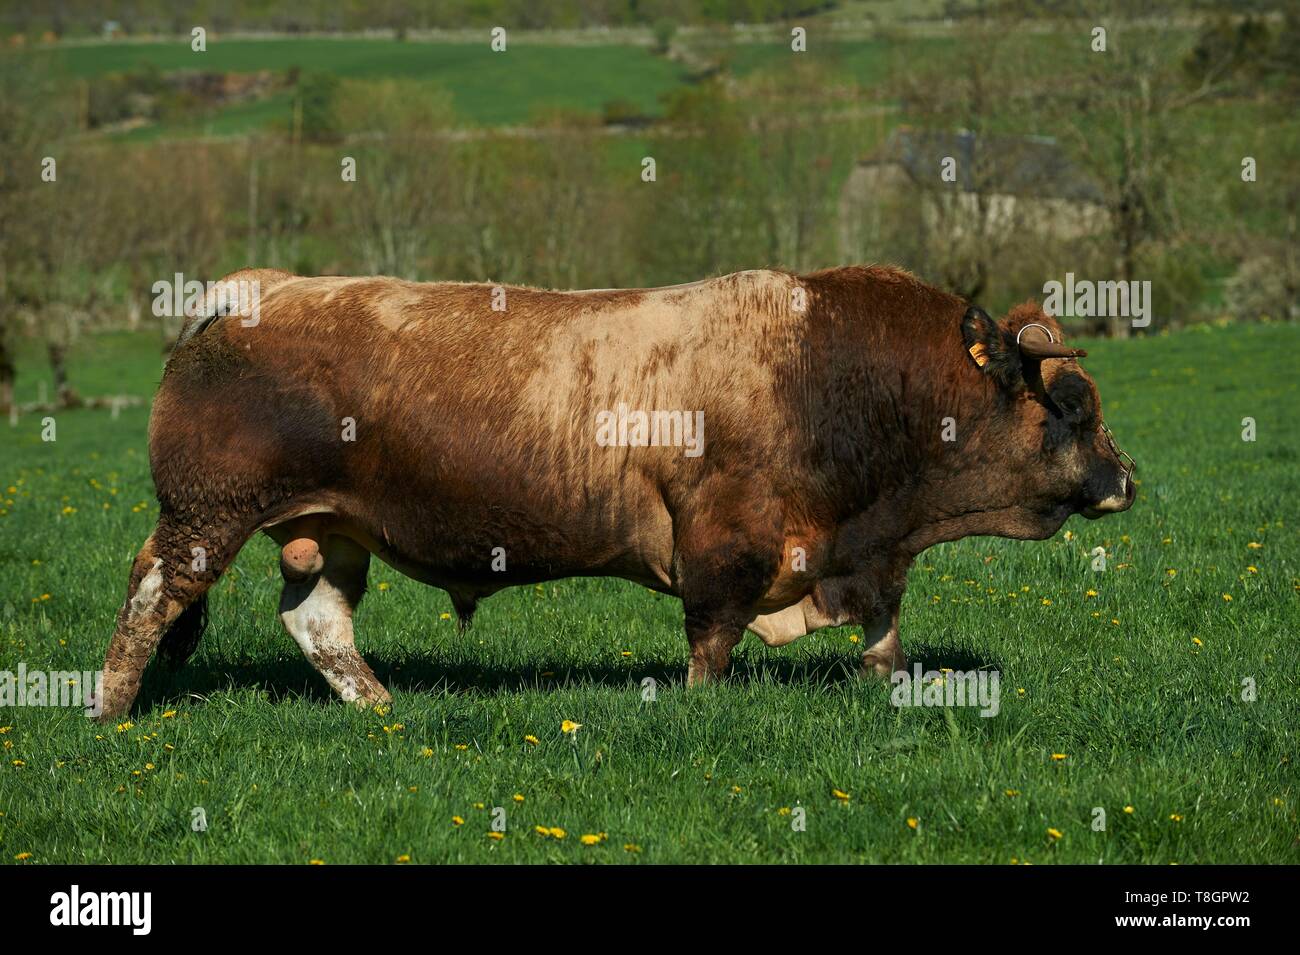 France, Aveyron, Laguiole, Celine Batut, breeder of the Aubrac cow, aubrac bull Stock Photo